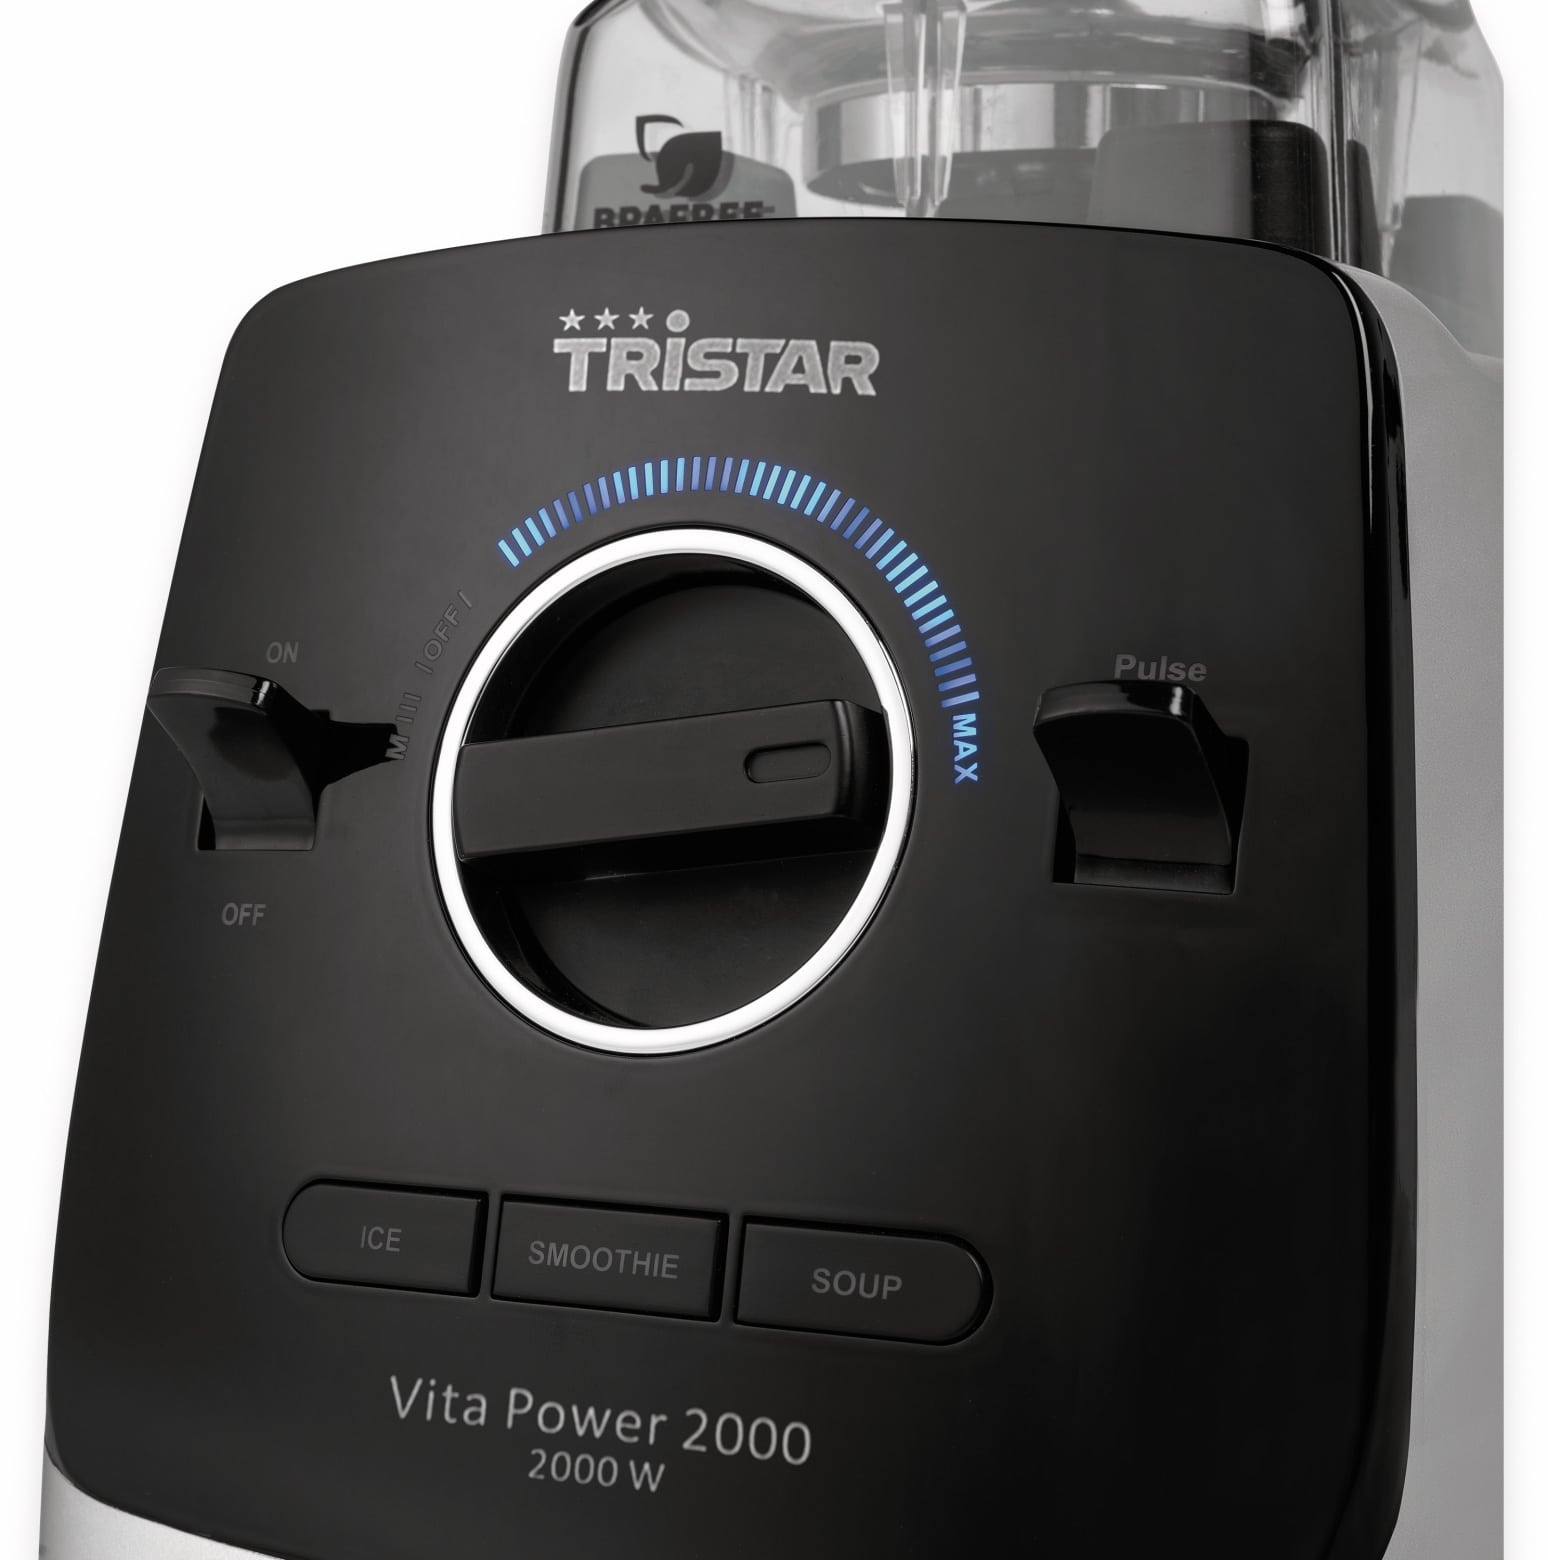 TRISTAR Standmixer BL-4473 VitaPower, 2000 W, 2 L